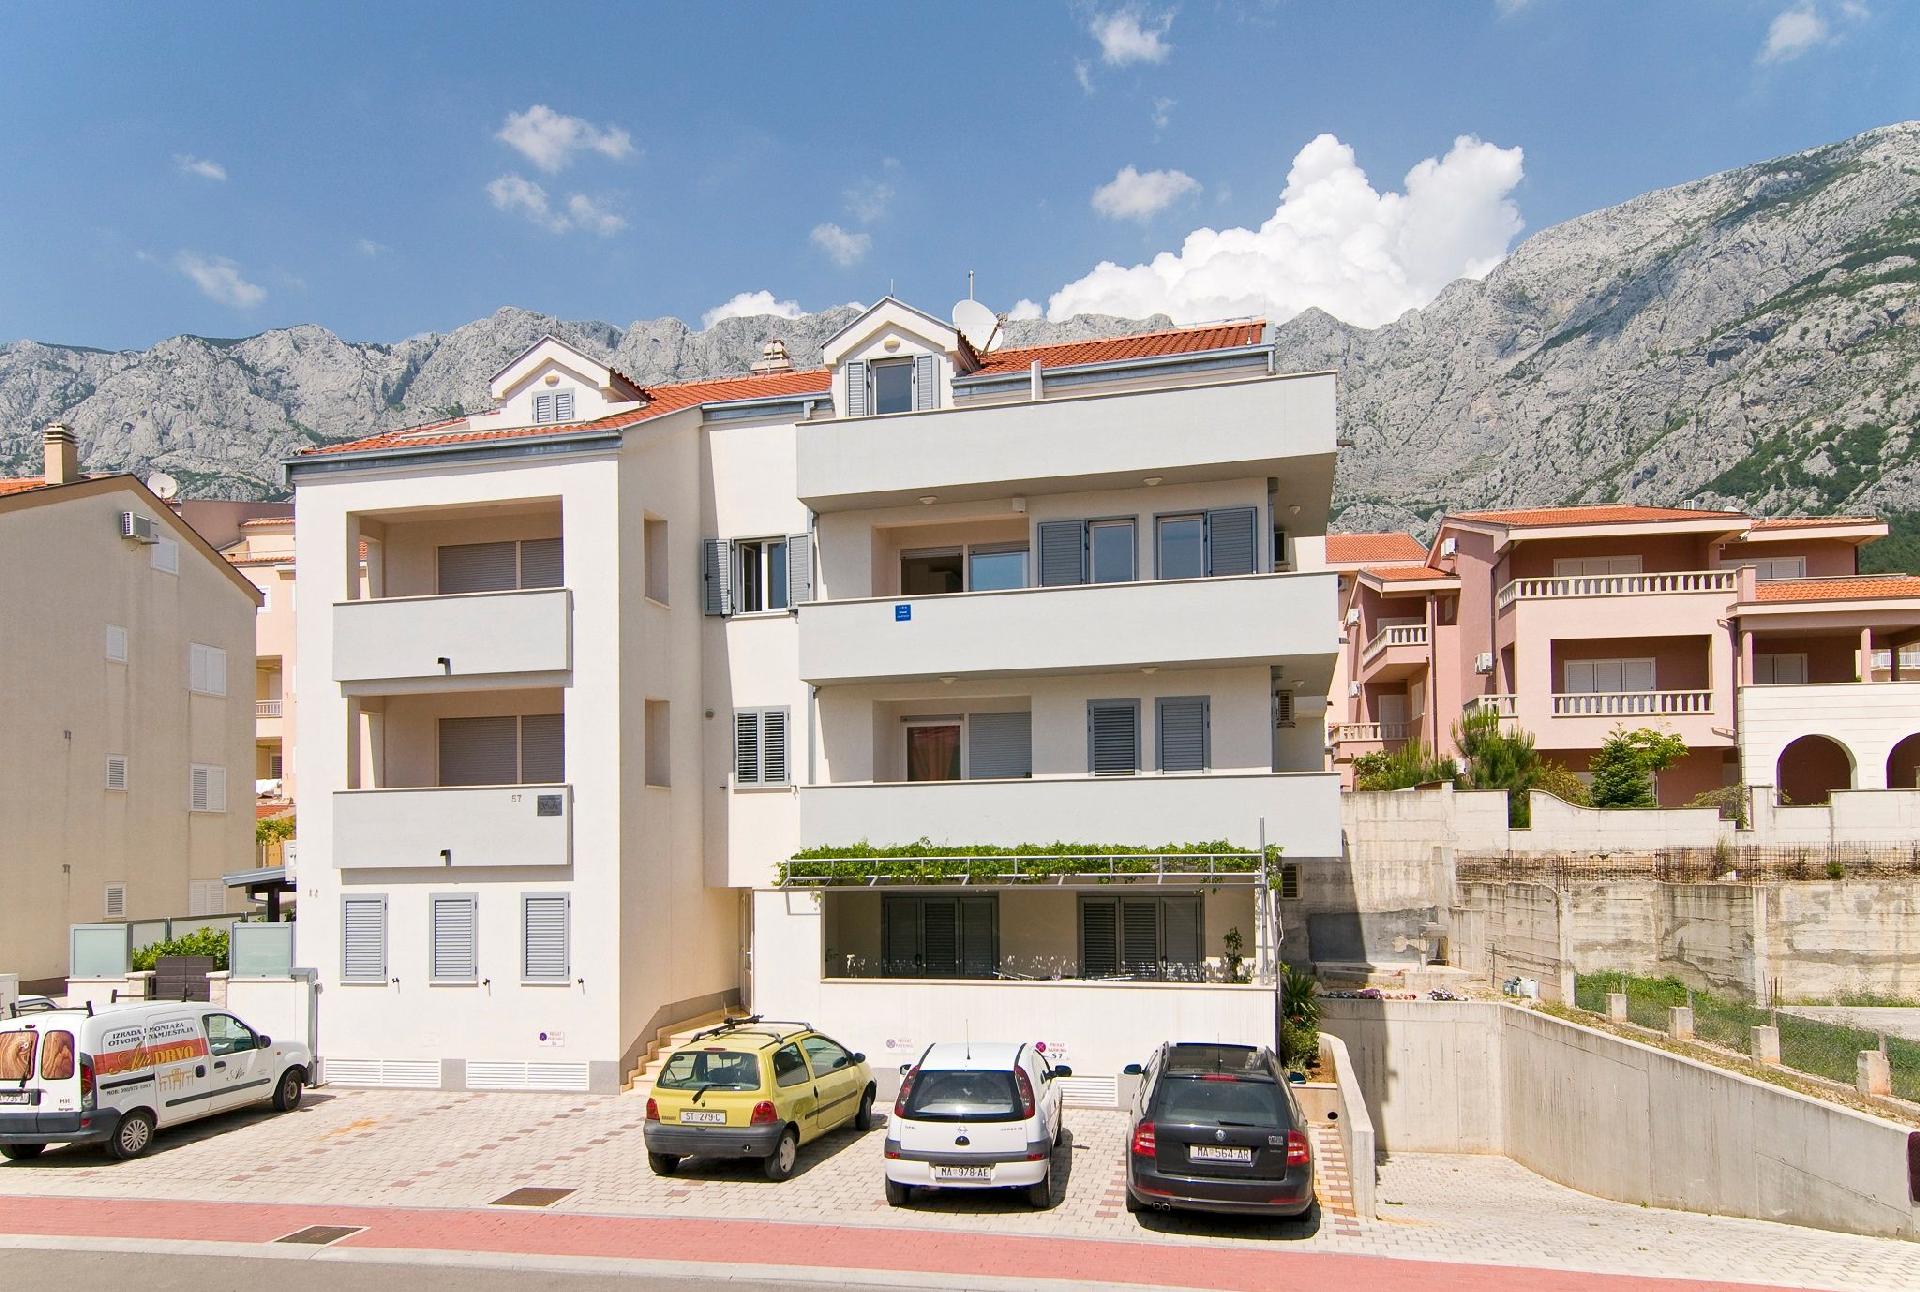 Ferienwohnung für 8 Personen ca. 85 m² i  in Dalmatien